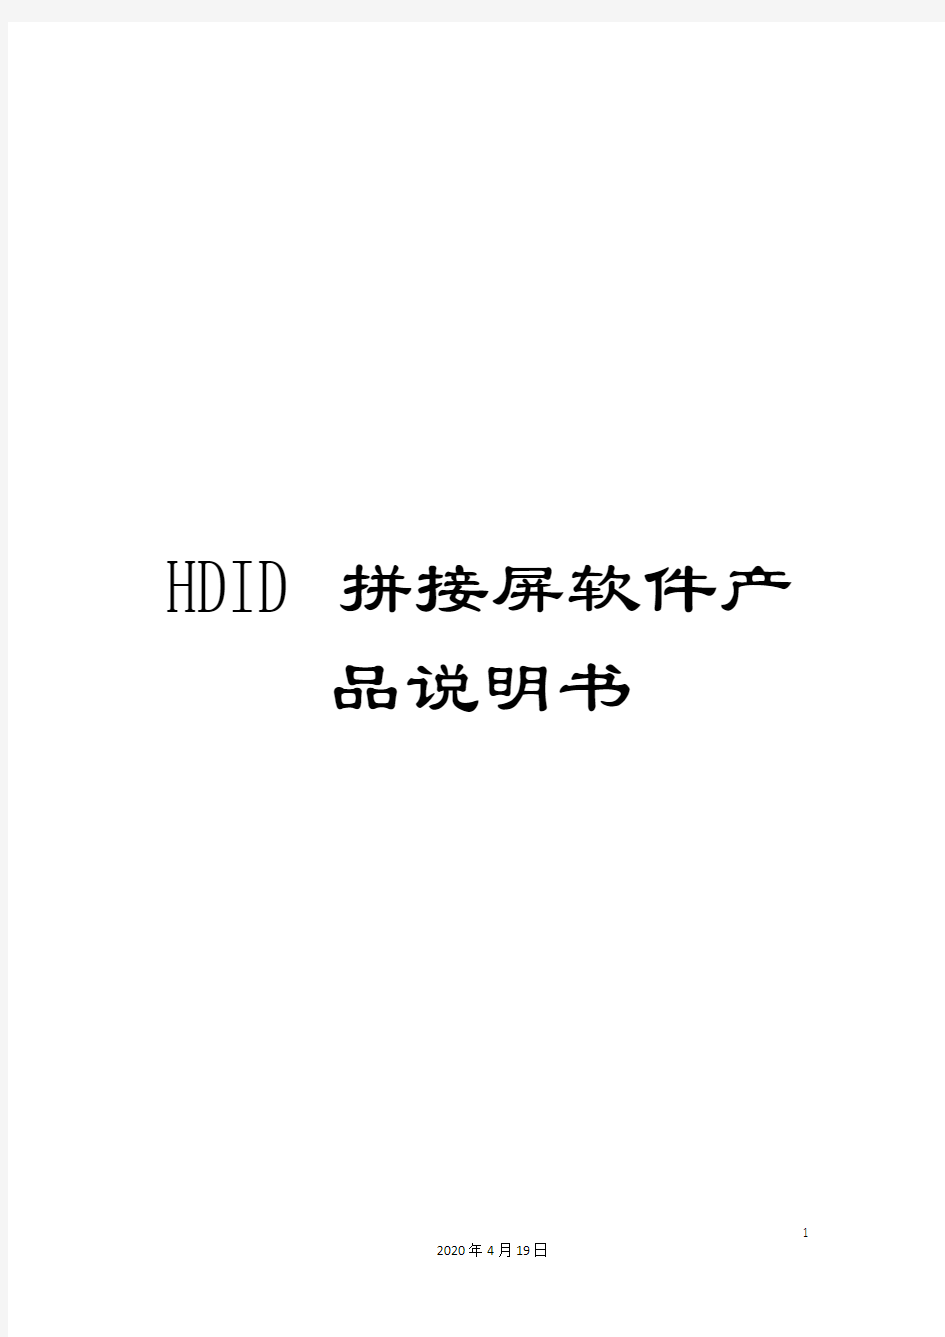 HDID拼接屏软件产品说明书